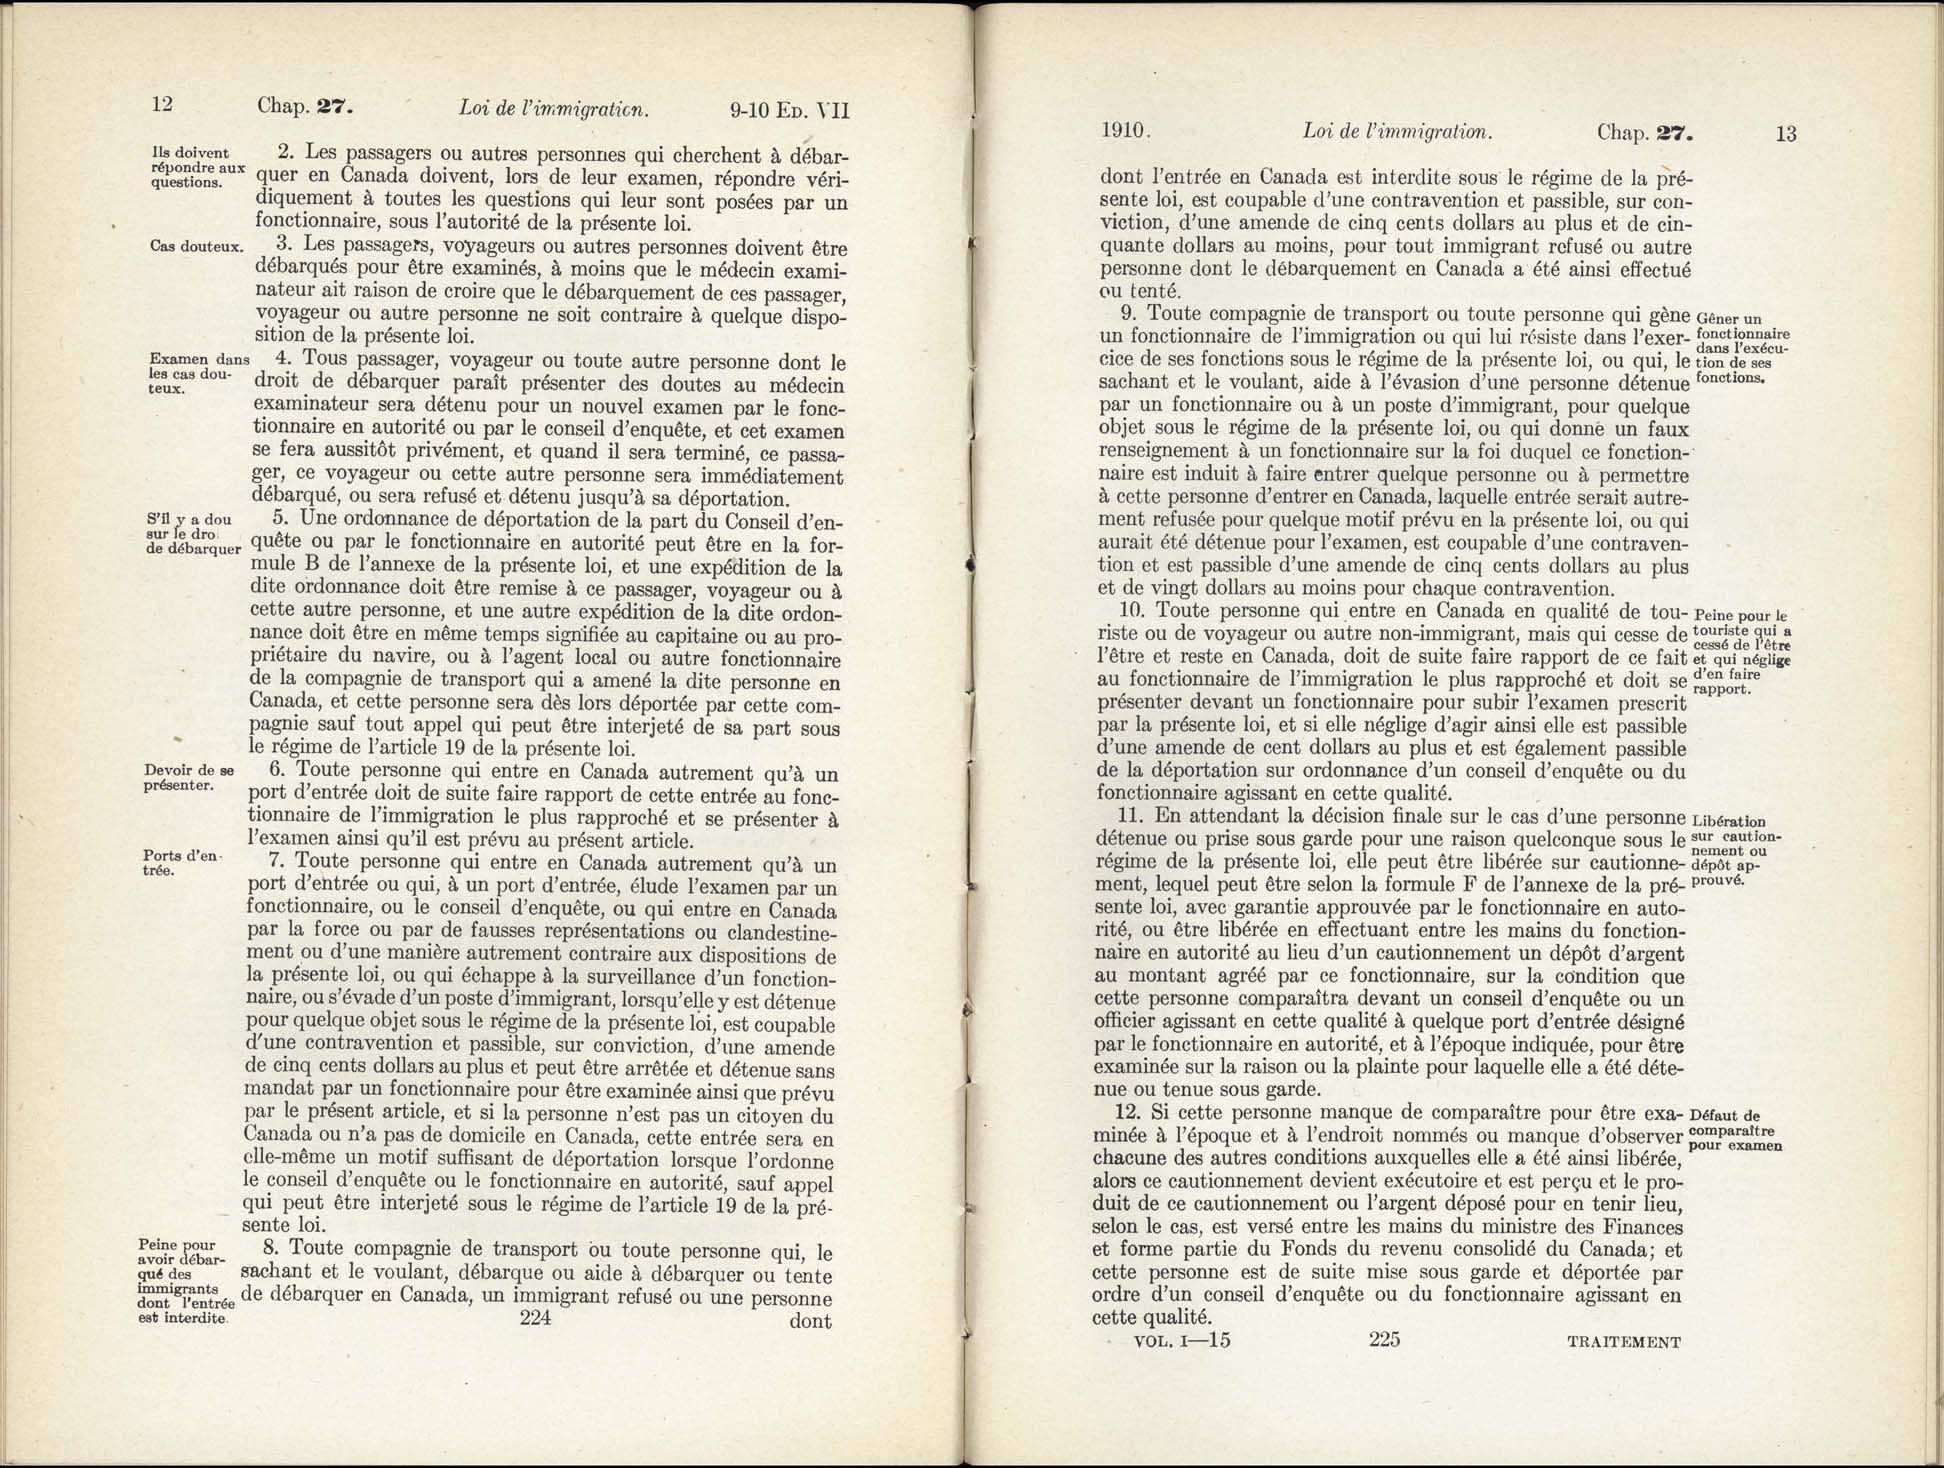 Chap 27 Page 224, 225 L’Acte d’immigration, 1910